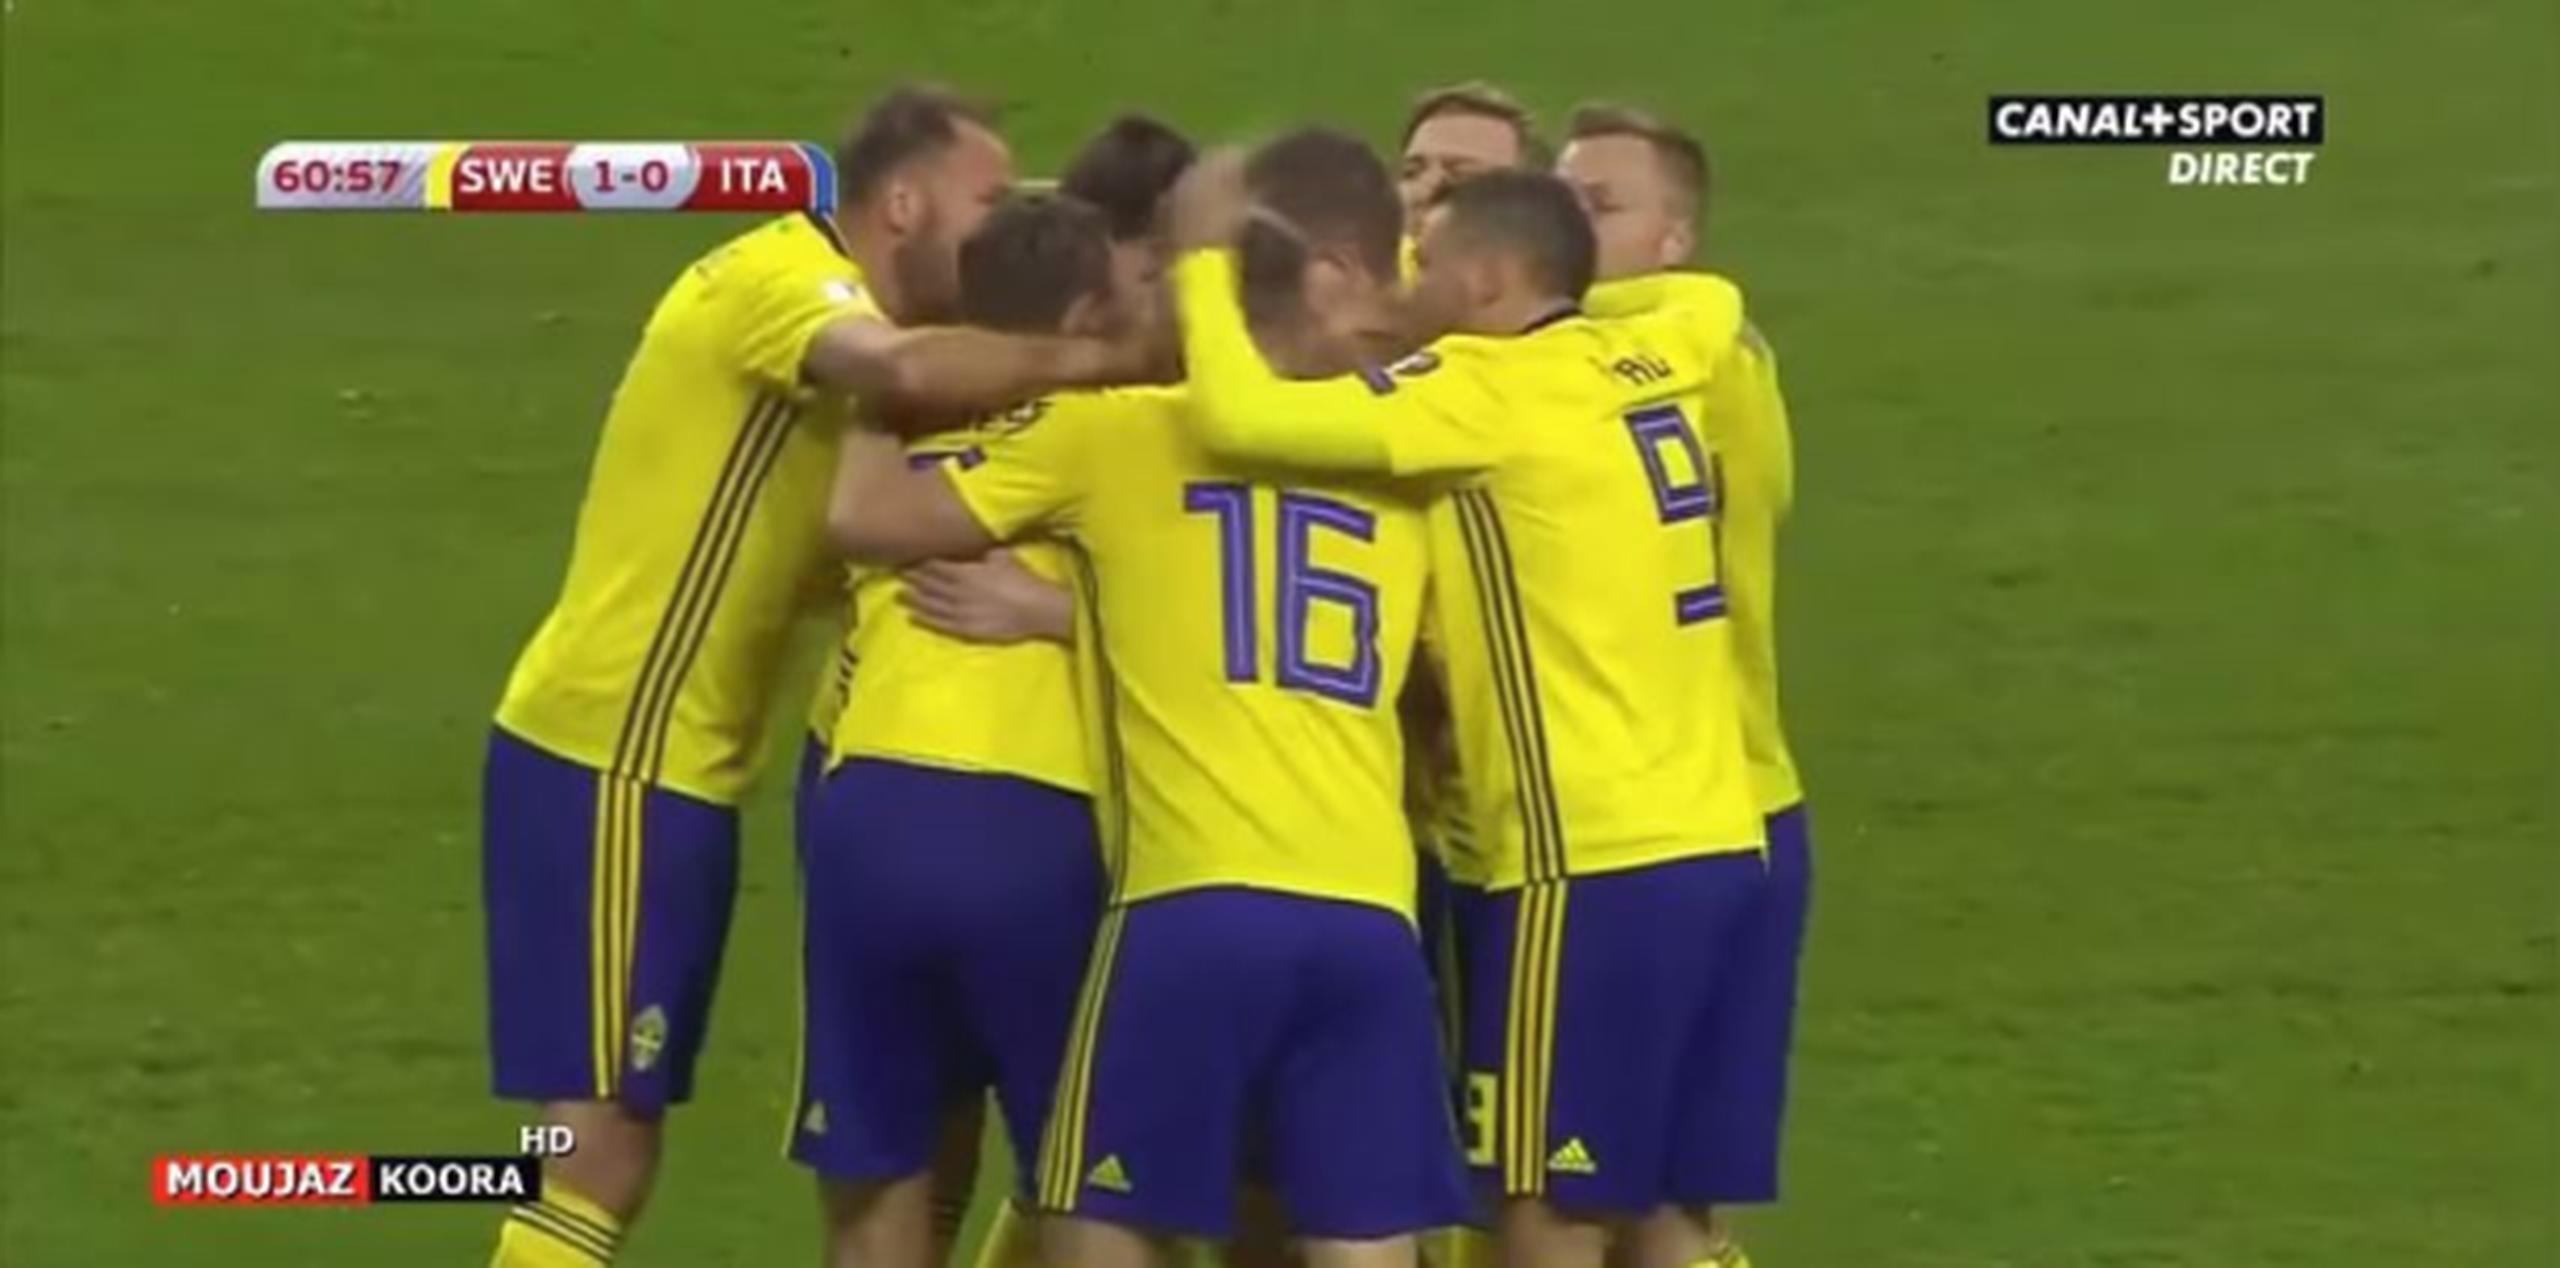 Los suecos celebran el gol que les dio el triunfo frente a Italia. (Captura/YouTube)